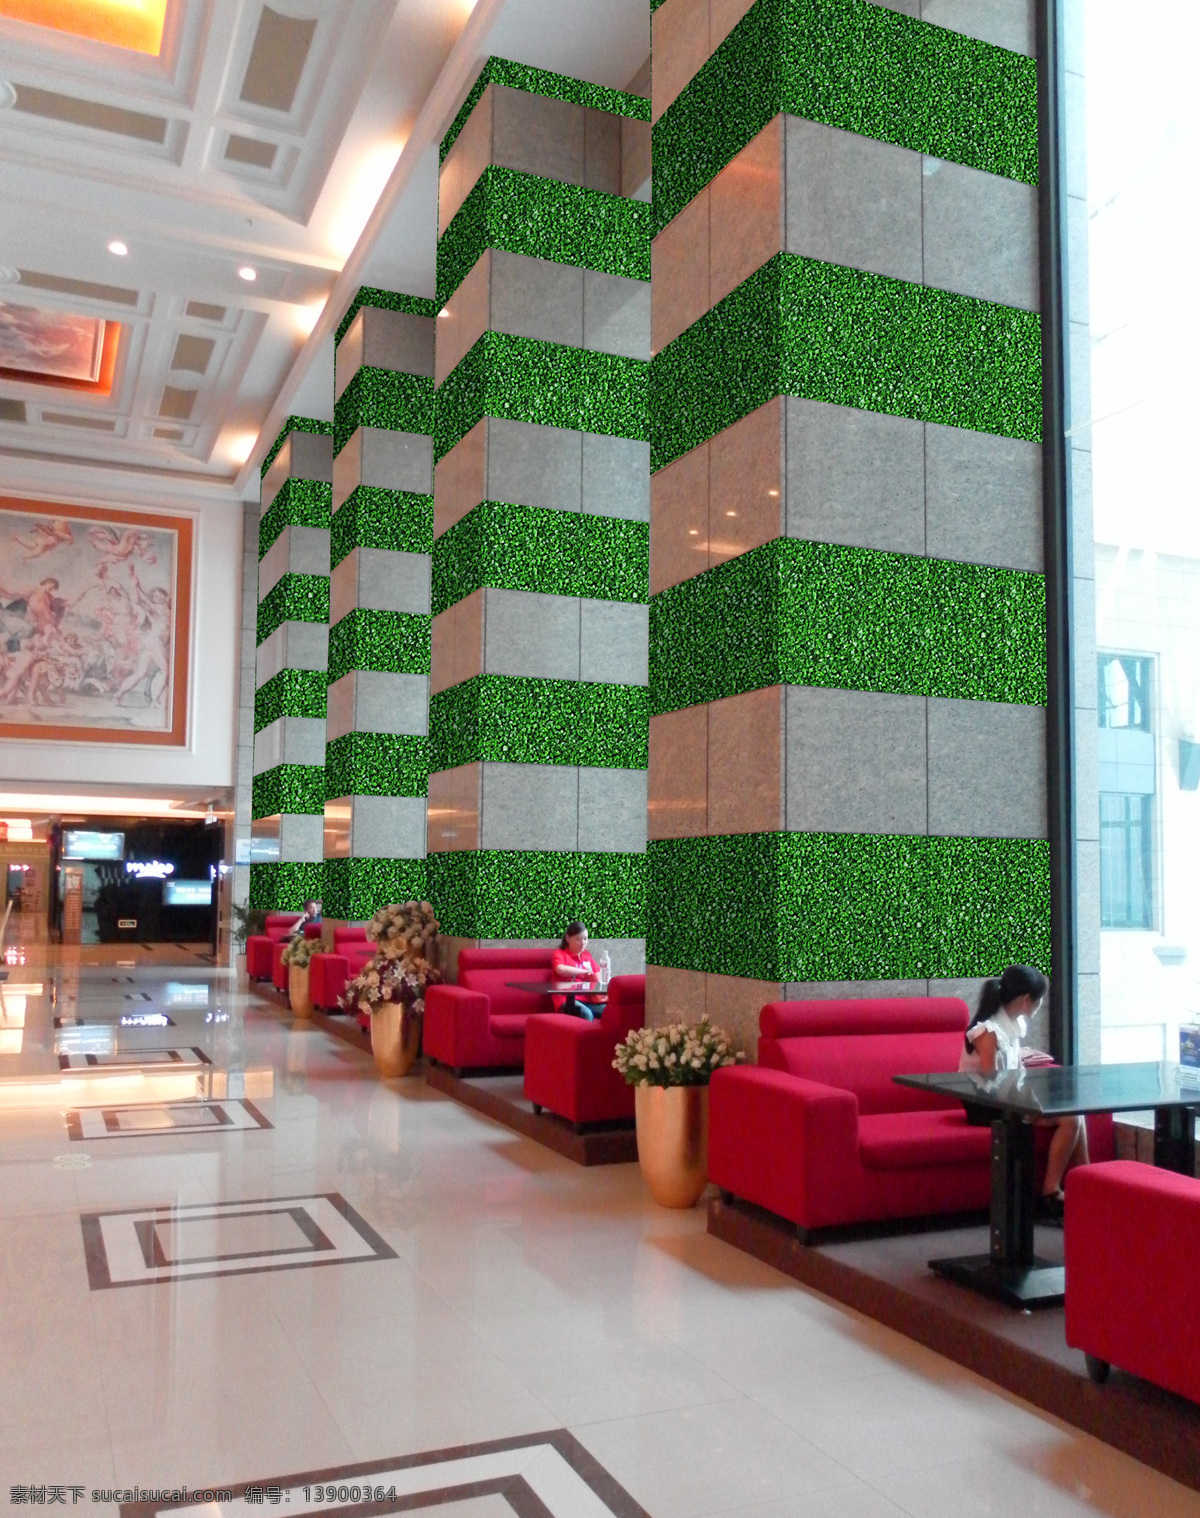 酒店装饰 环境设计 绿色 墙面 室内设计 植物 酒店宾馆装饰 仿真植物 家居装饰素材